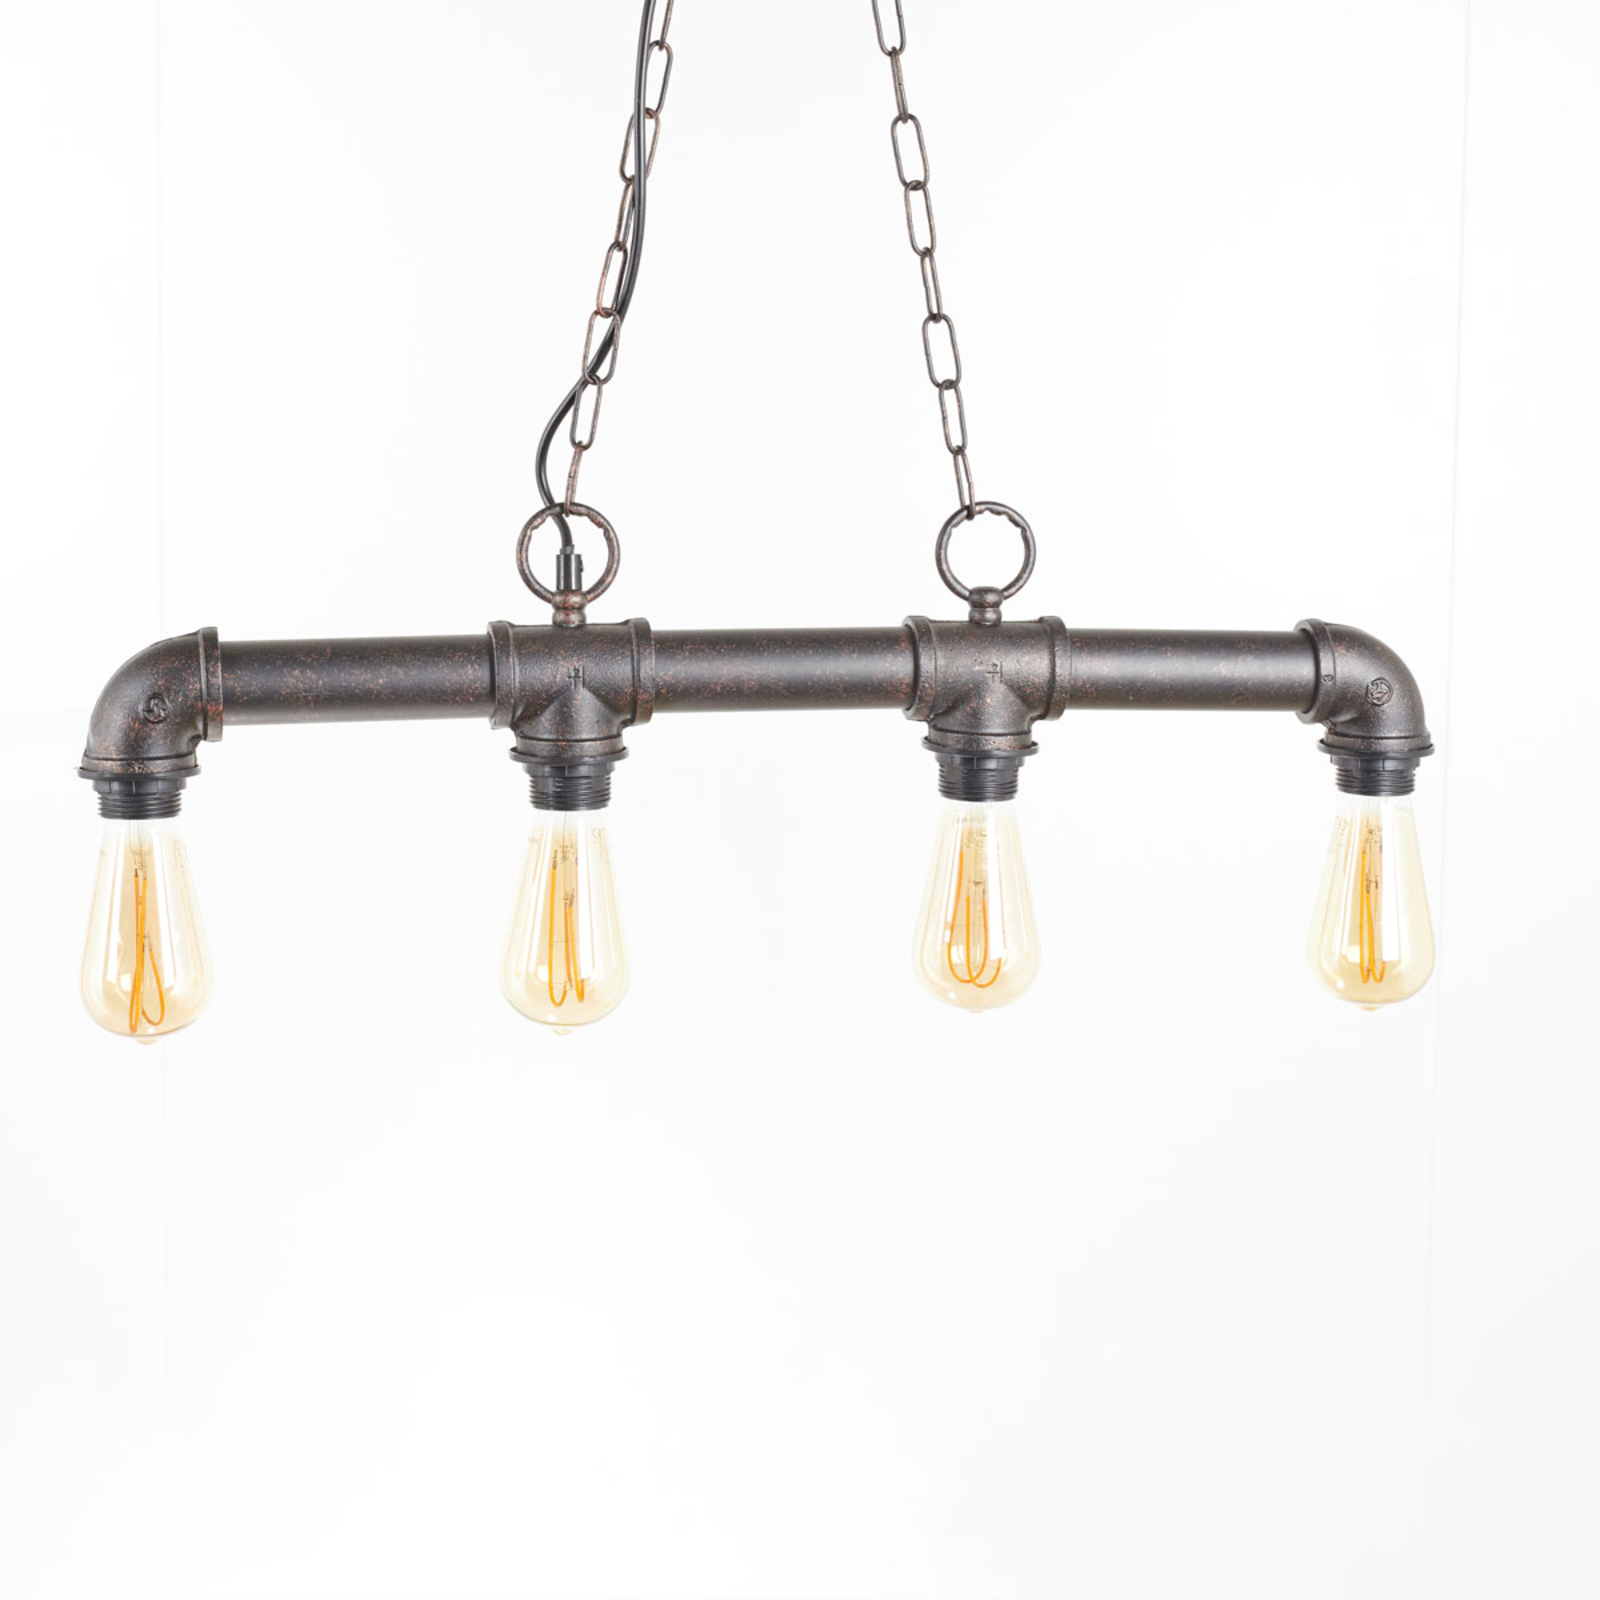 - hanglamp met lampjes in ruwe optiek Lampen24.nl